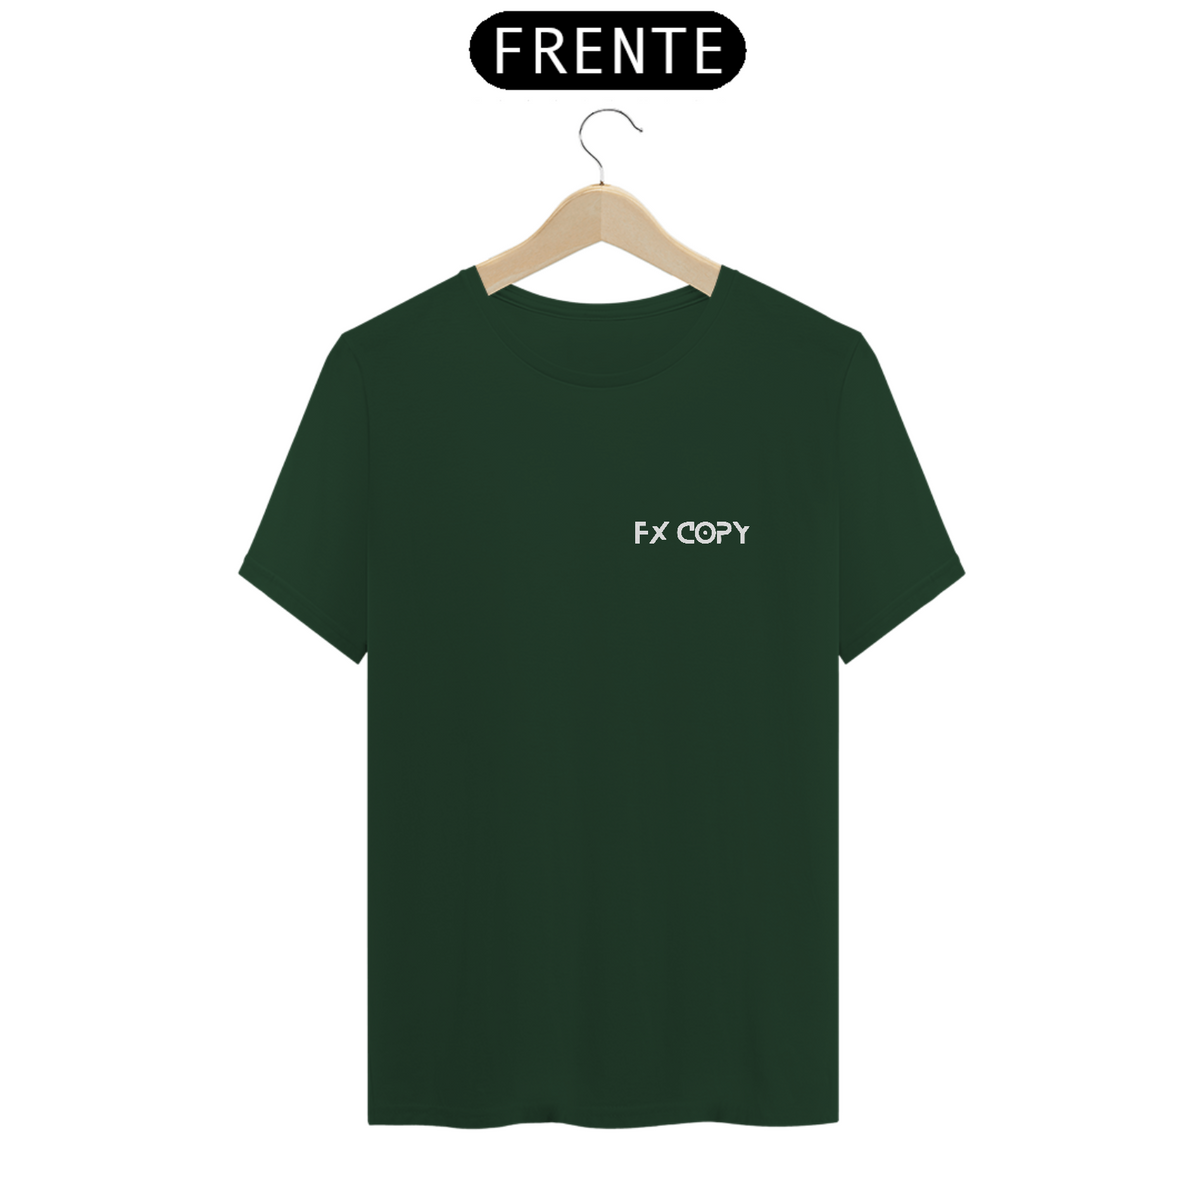 Nome do produto: T-shirt fxcopy - Basic